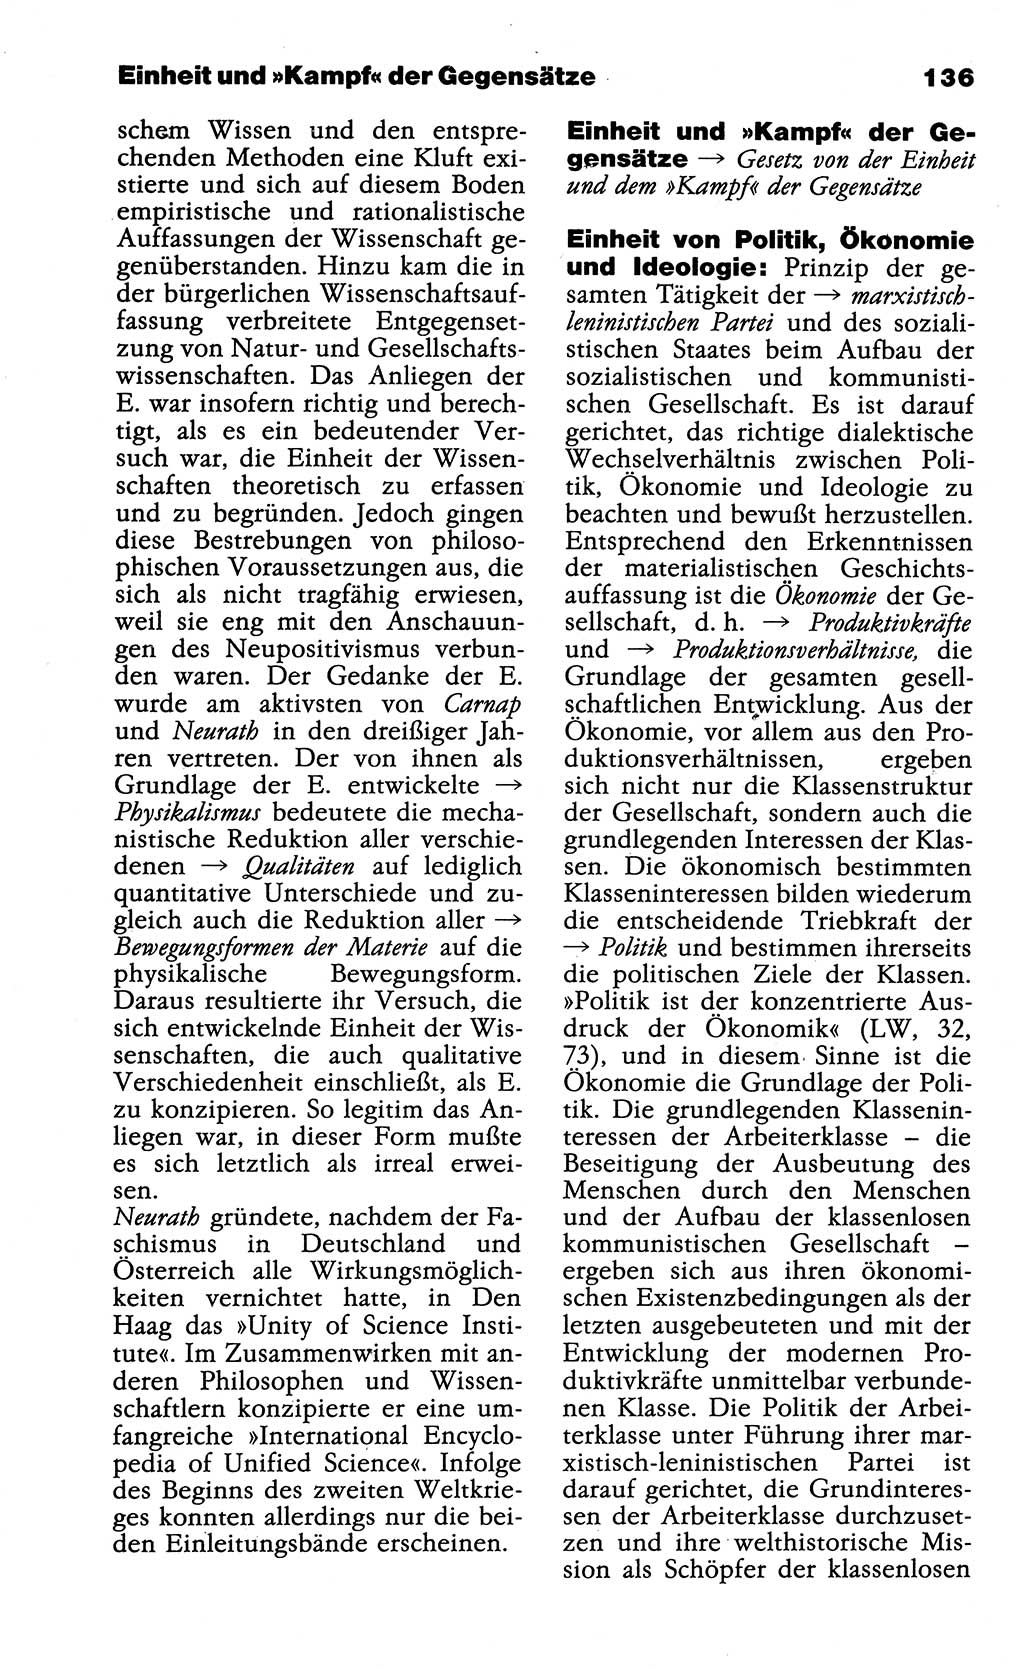 Wörterbuch der marxistisch-leninistischen Philosophie [Deutsche Demokratische Republik (DDR)] 1985, Seite 136 (Wb. ML Phil. DDR 1985, S. 136)